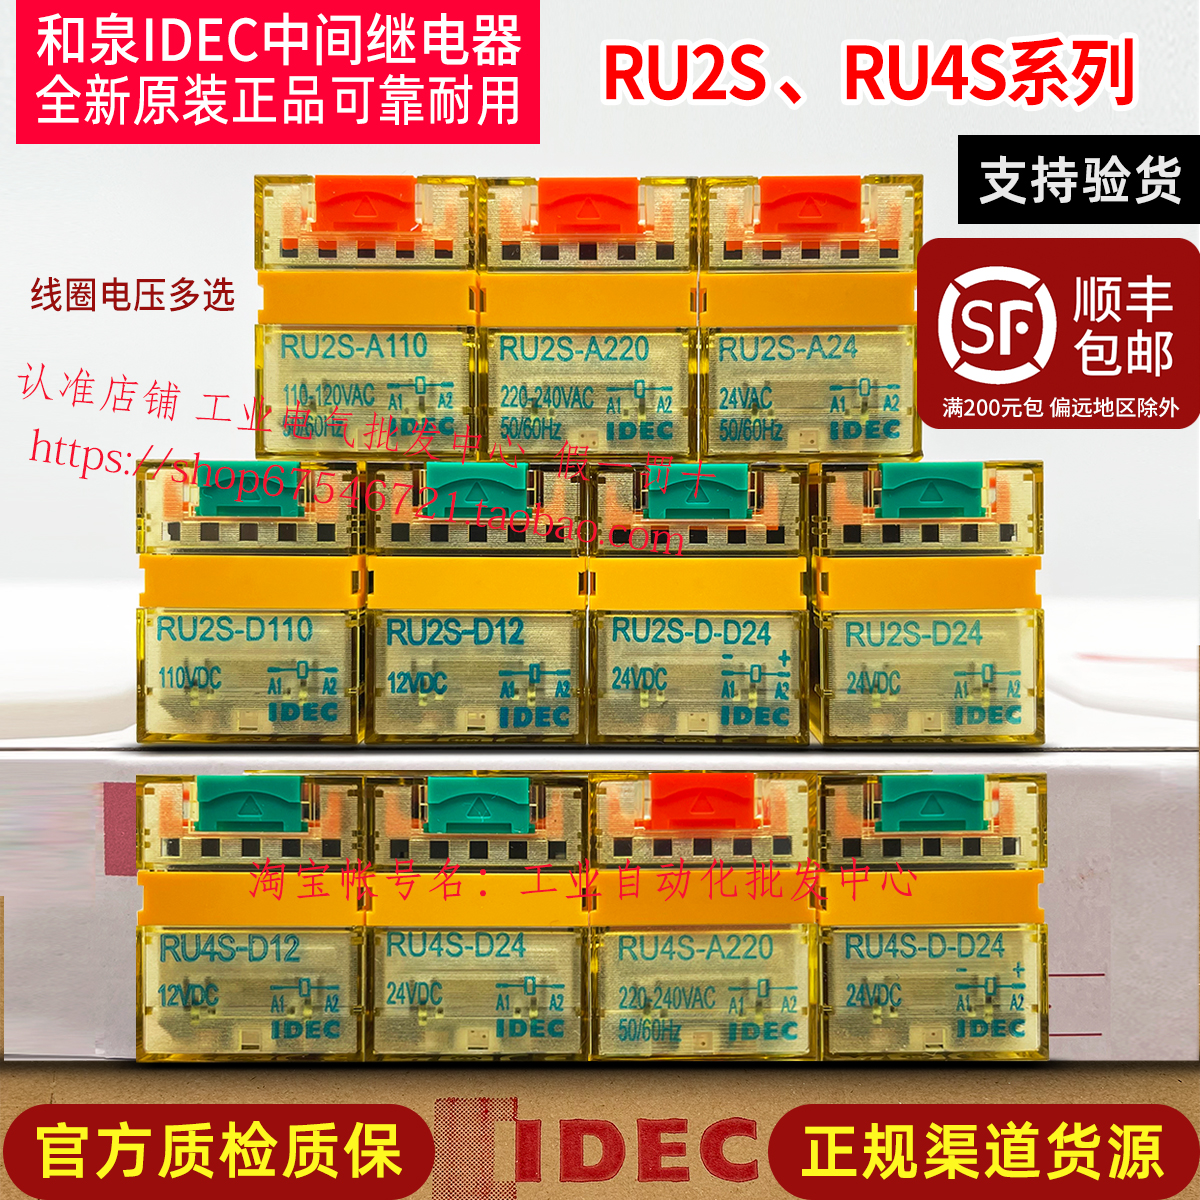 正品和泉IDEC中间继电器RU2S-D24 RU4S-D24 -A220 DC24V 220V -C 电子元器件市场 继电器 原图主图